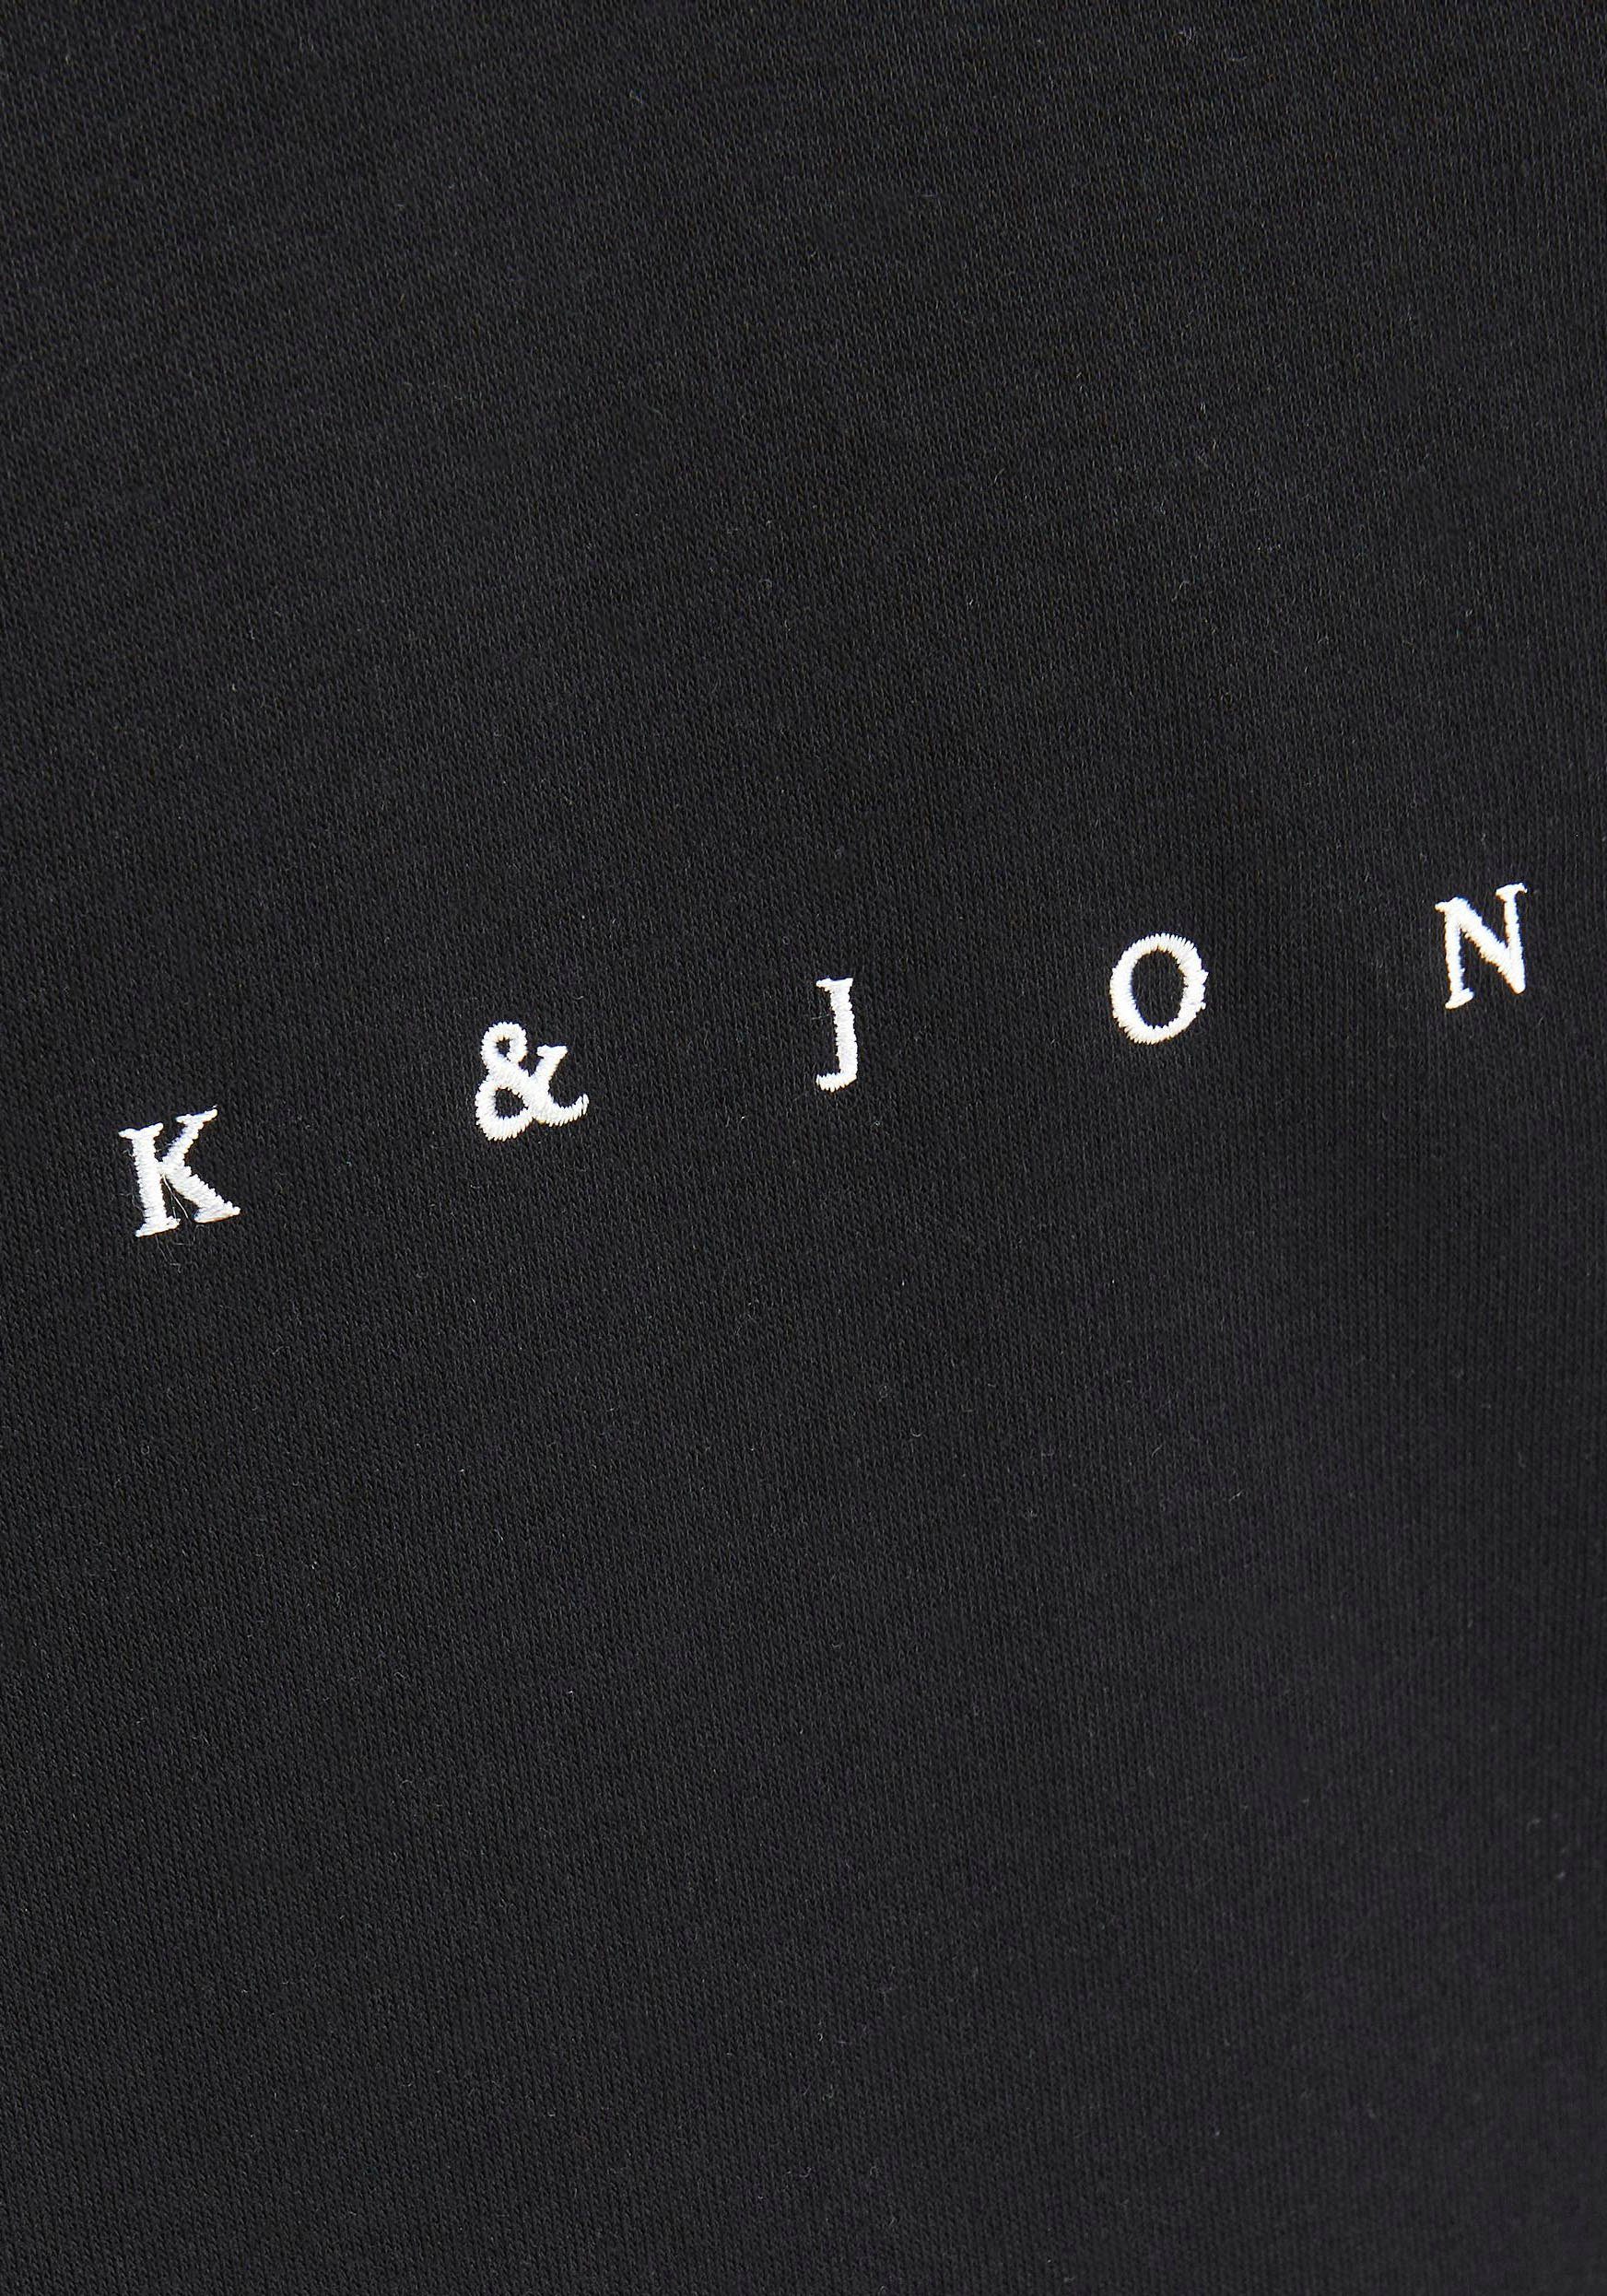 Jack & NOOS Detail Junior JORCOPENHAGEN JNR Black SWEAT Kapuzensweatshirt Jones HOOD